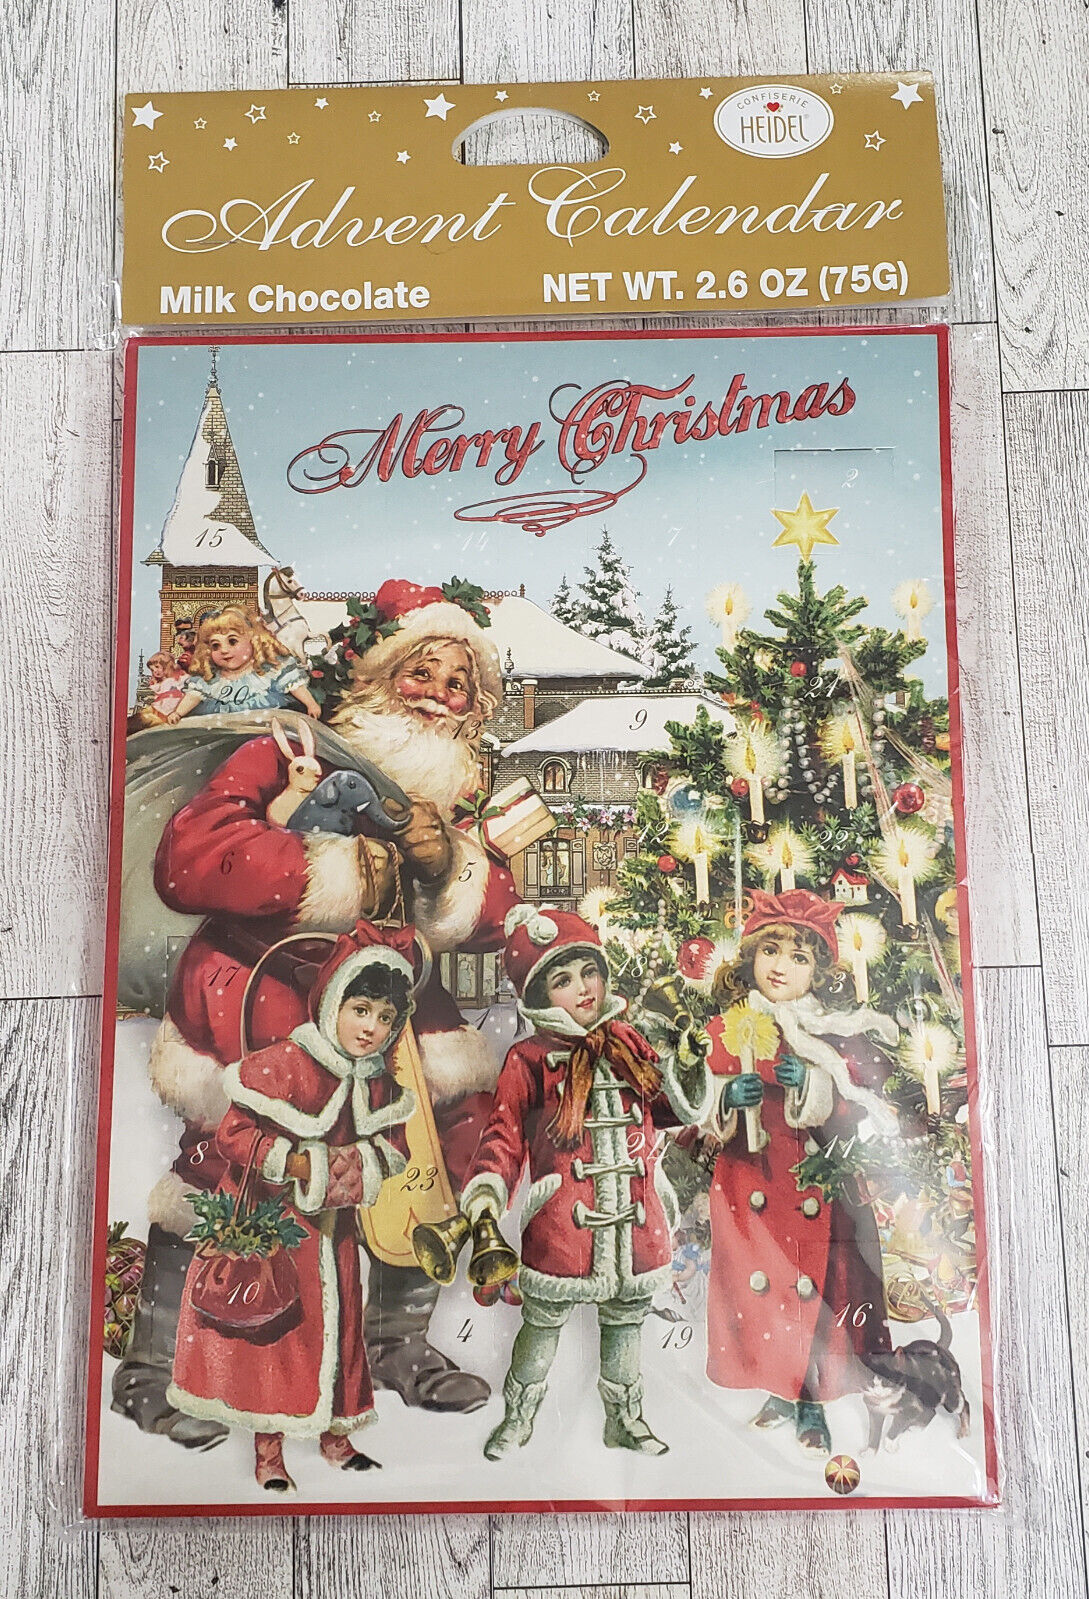 Boite chocolats Nostalgie de Noël Confiserie heidel